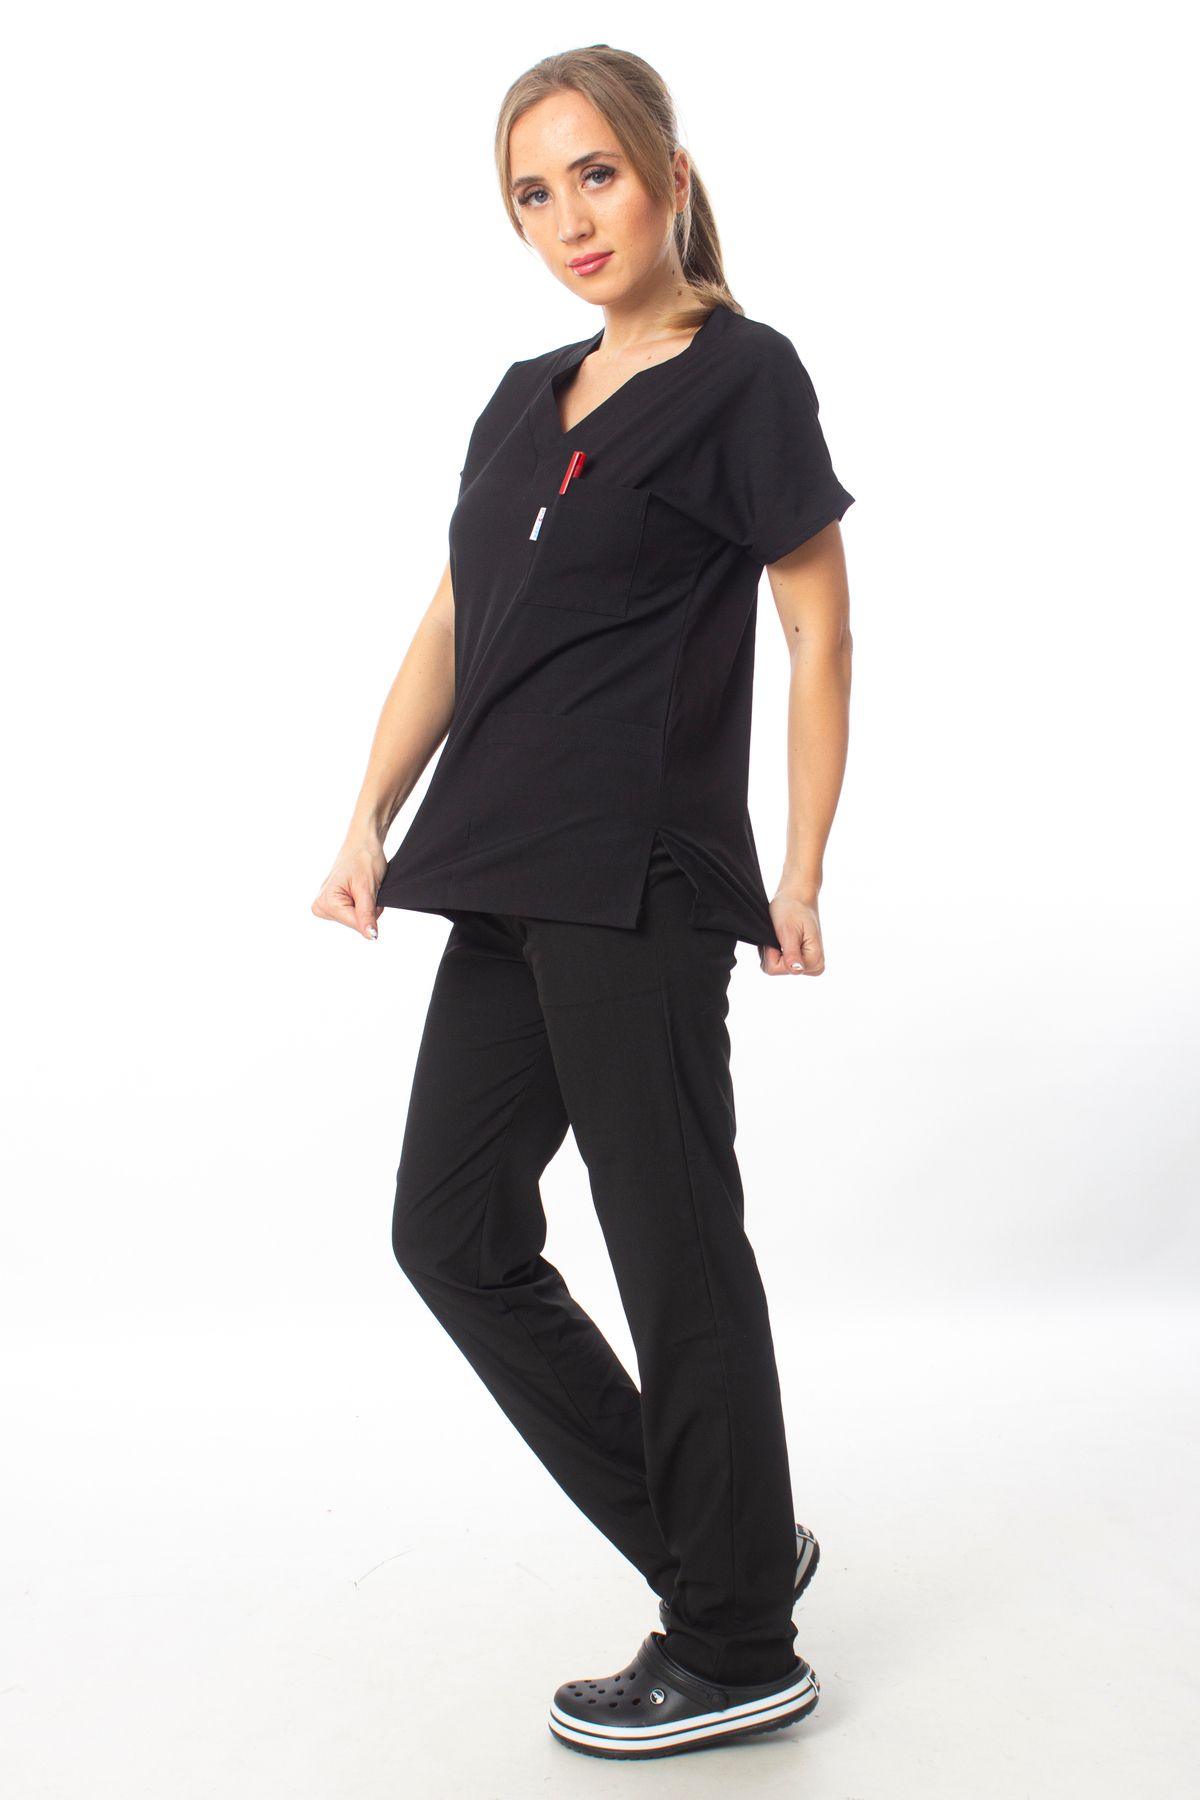 Simirna Üniforma Premium Kumaş Likralı Cerrahi Doktor Hemşire Siyah Forma Takım